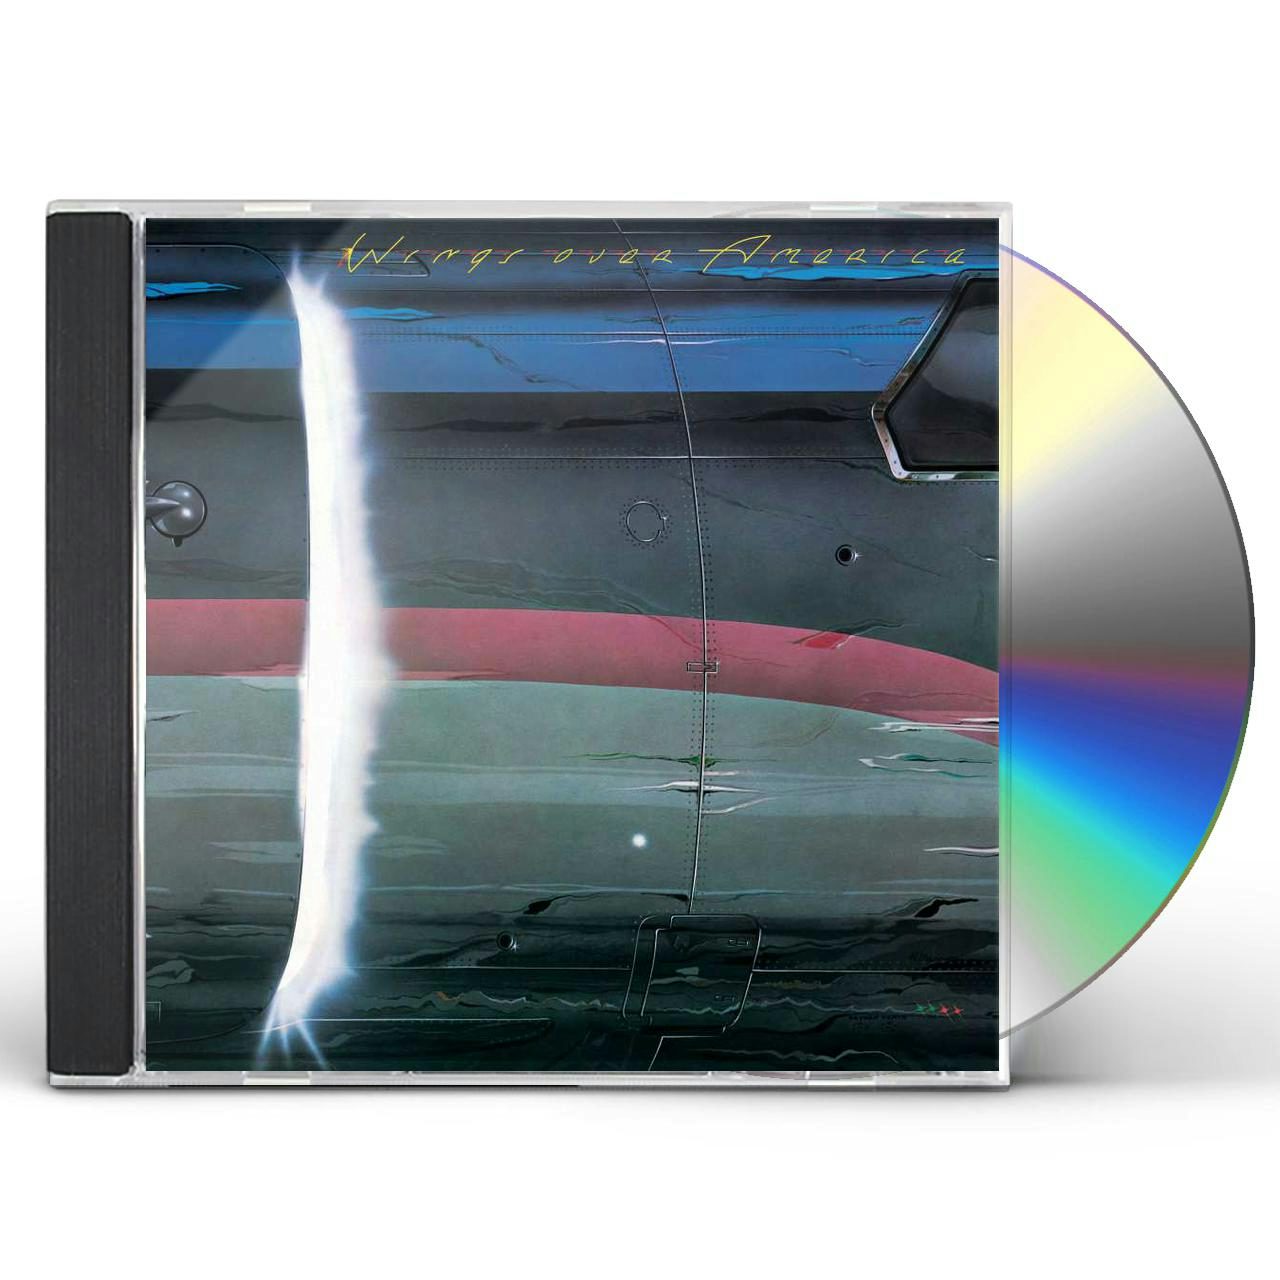 Paul McCartney & Wings Over America (2 CD) CD